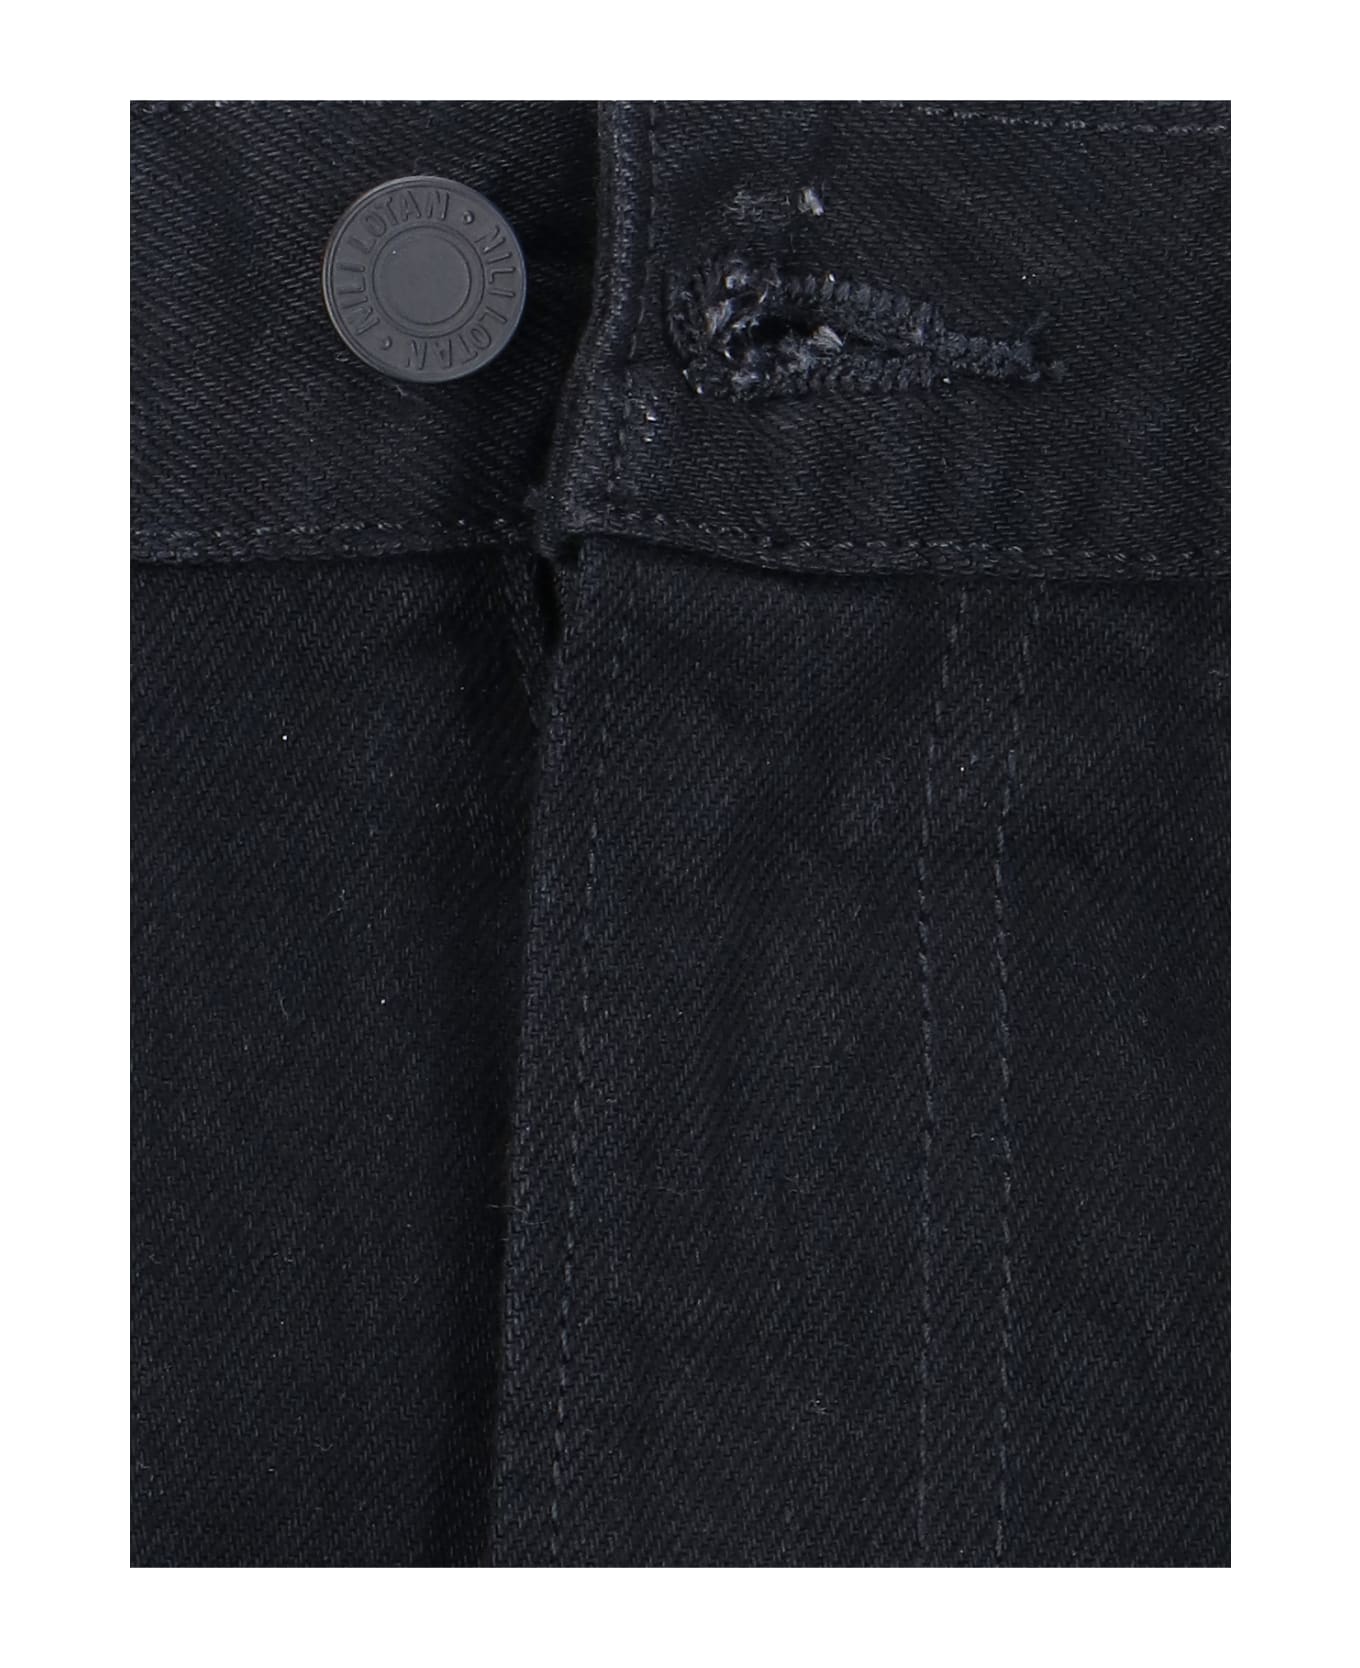 Nili Lotan Jeans Bootcut - Black  